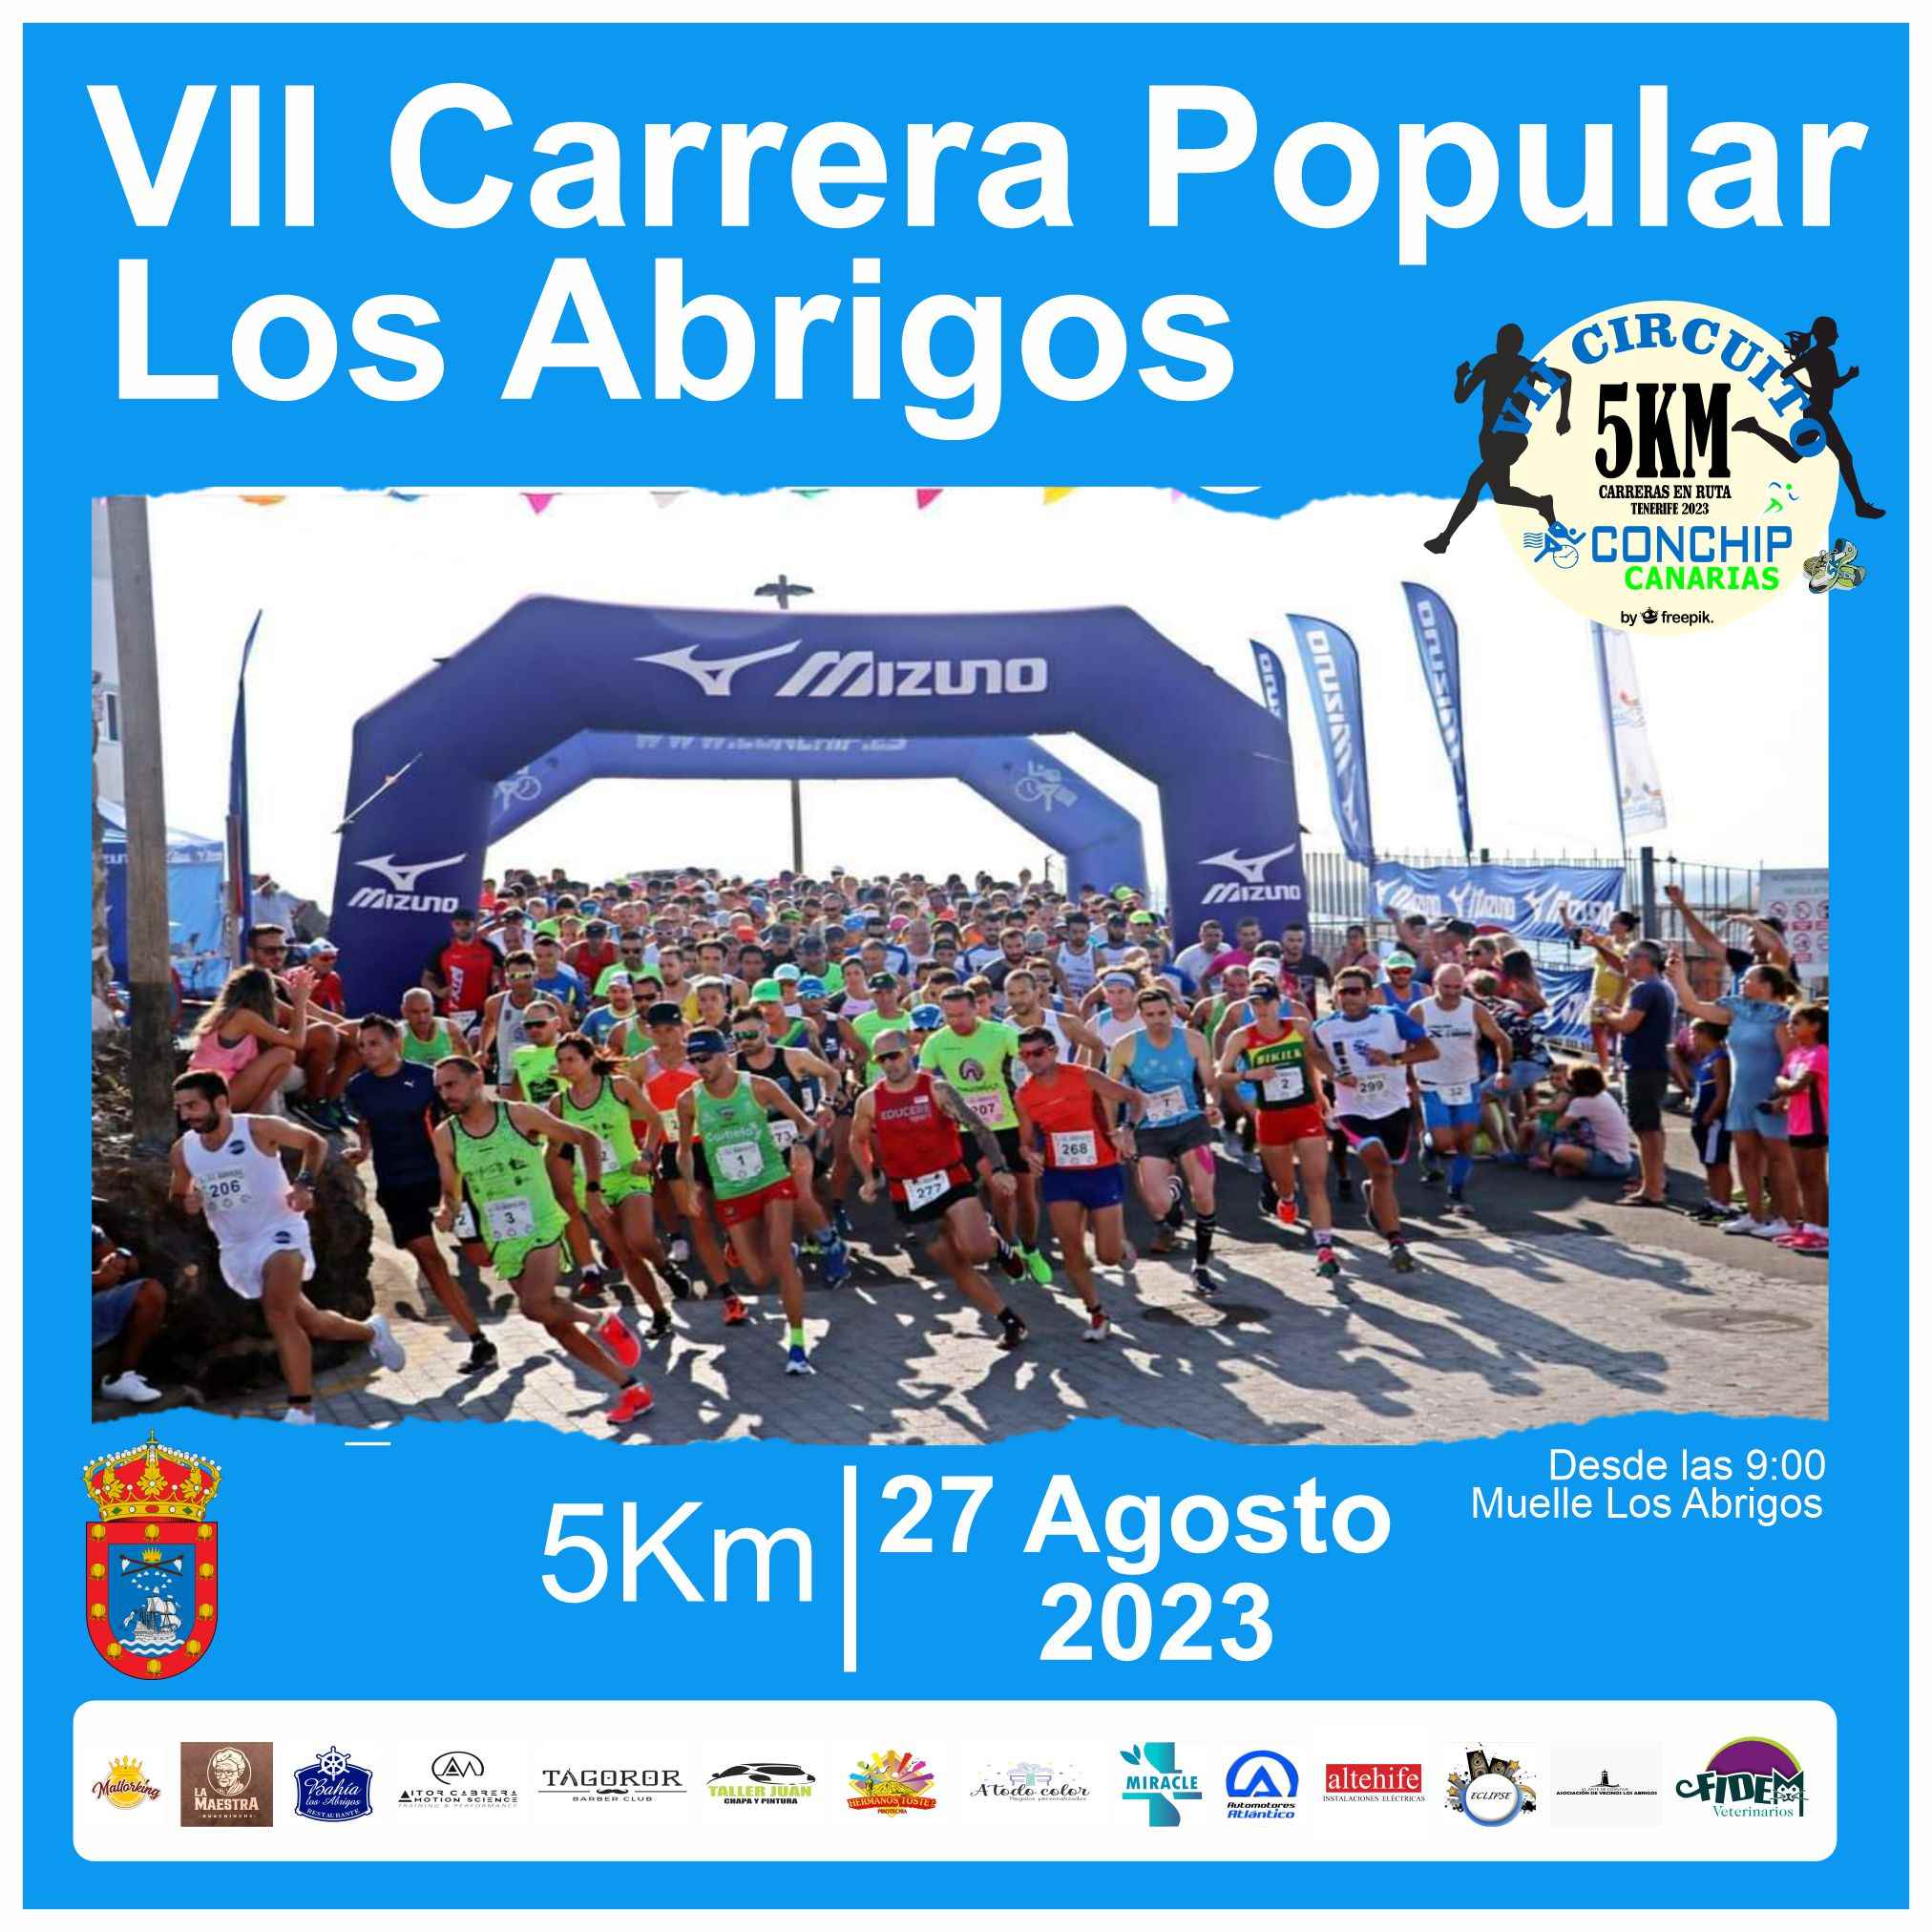 VII CARRERA POPULAR SAN BLAS-LOS ABRIGOS 2023 - Inscríbete